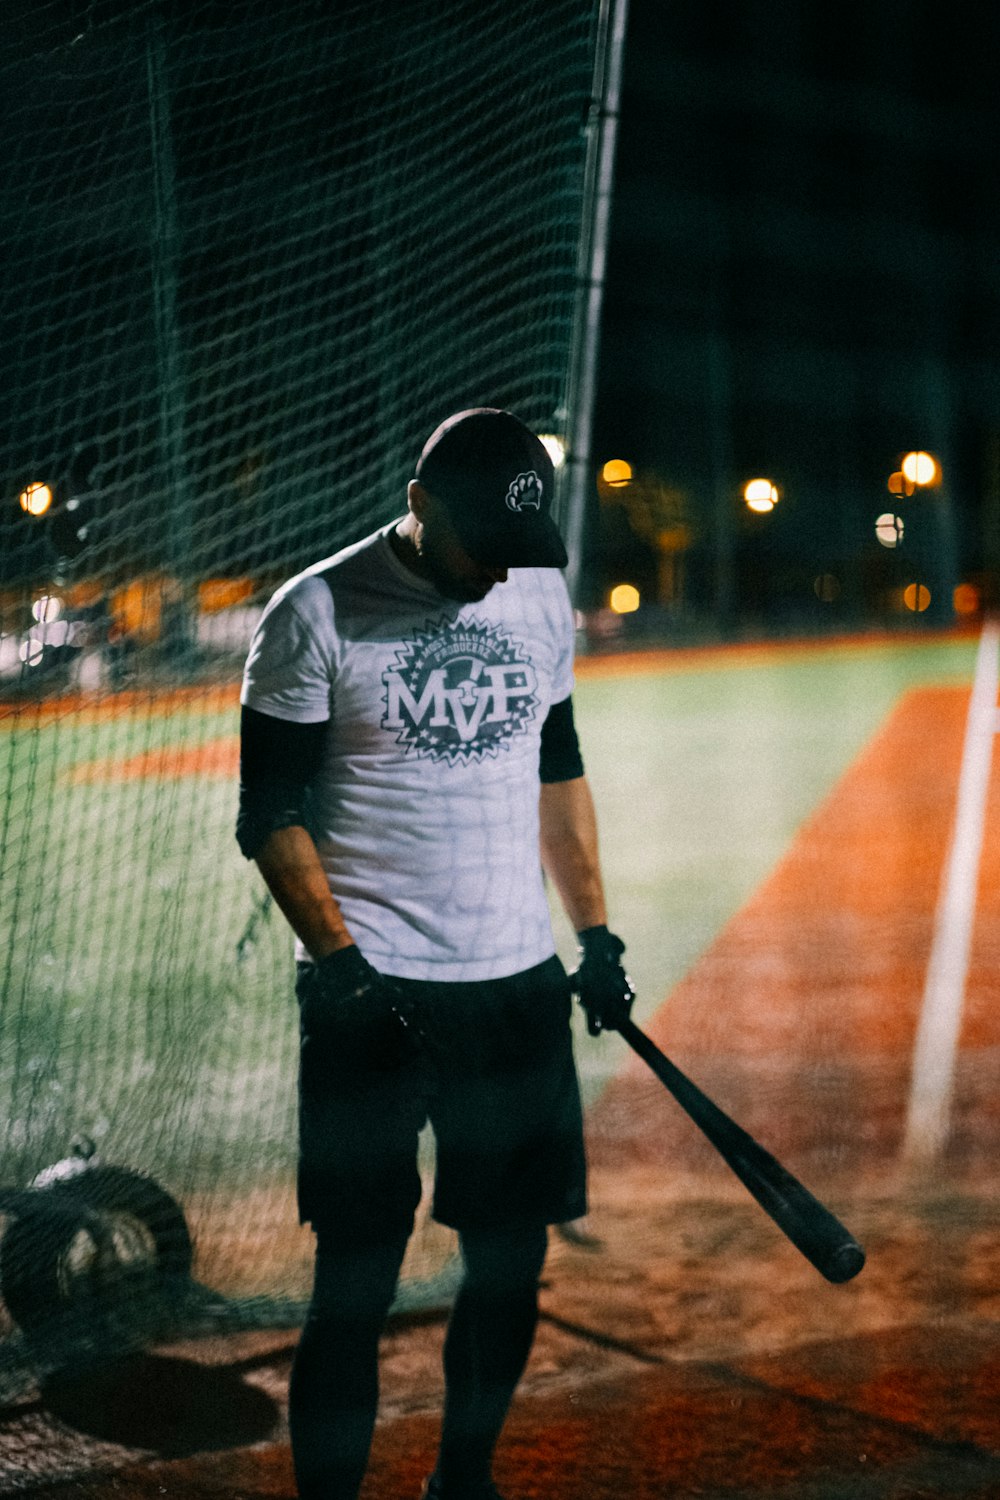 Un uomo che tiene una mazza da baseball su un campo da baseball